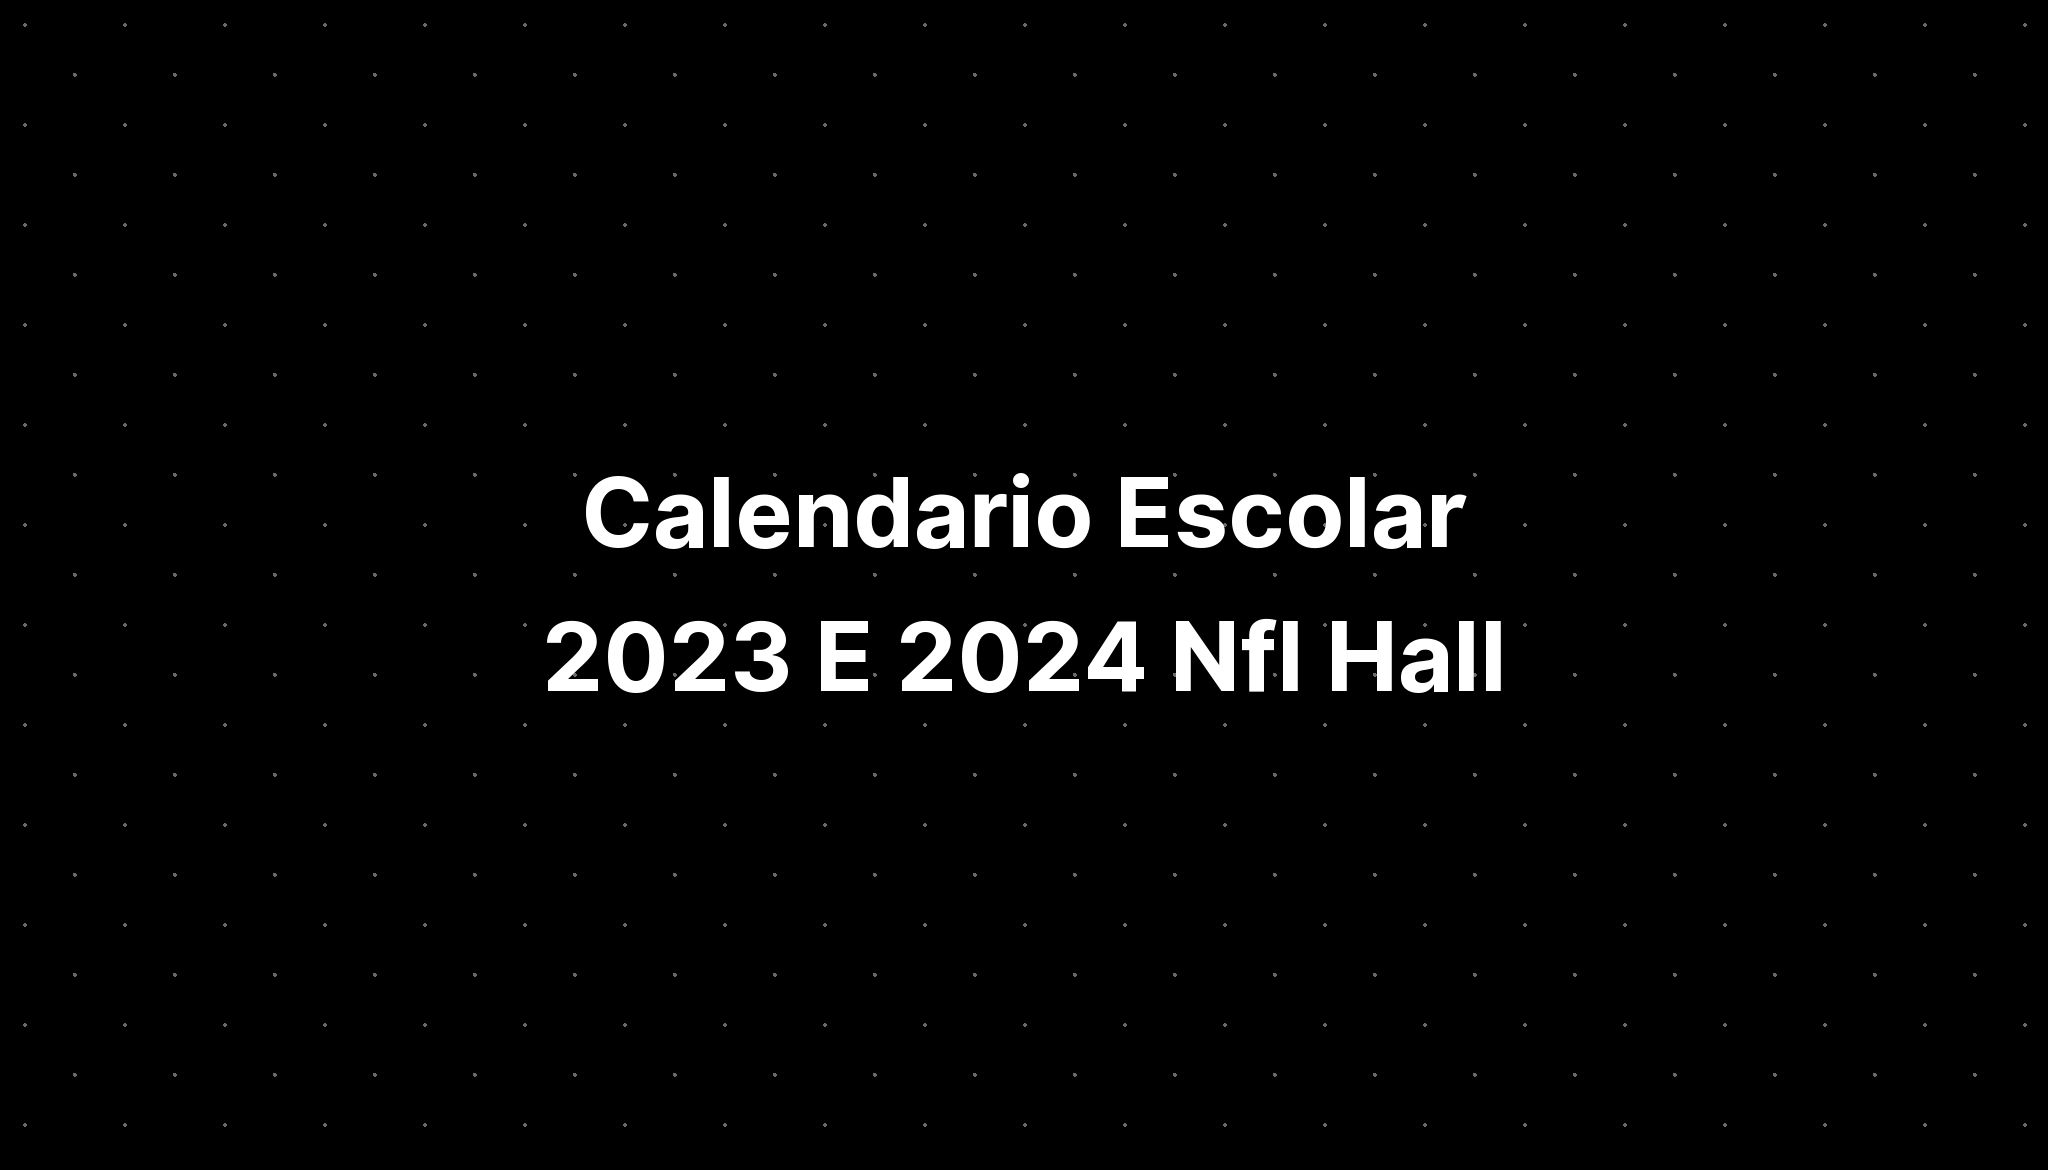 Calendario Escolar 2023 E 2024 Nfl Hall IMAGESEE